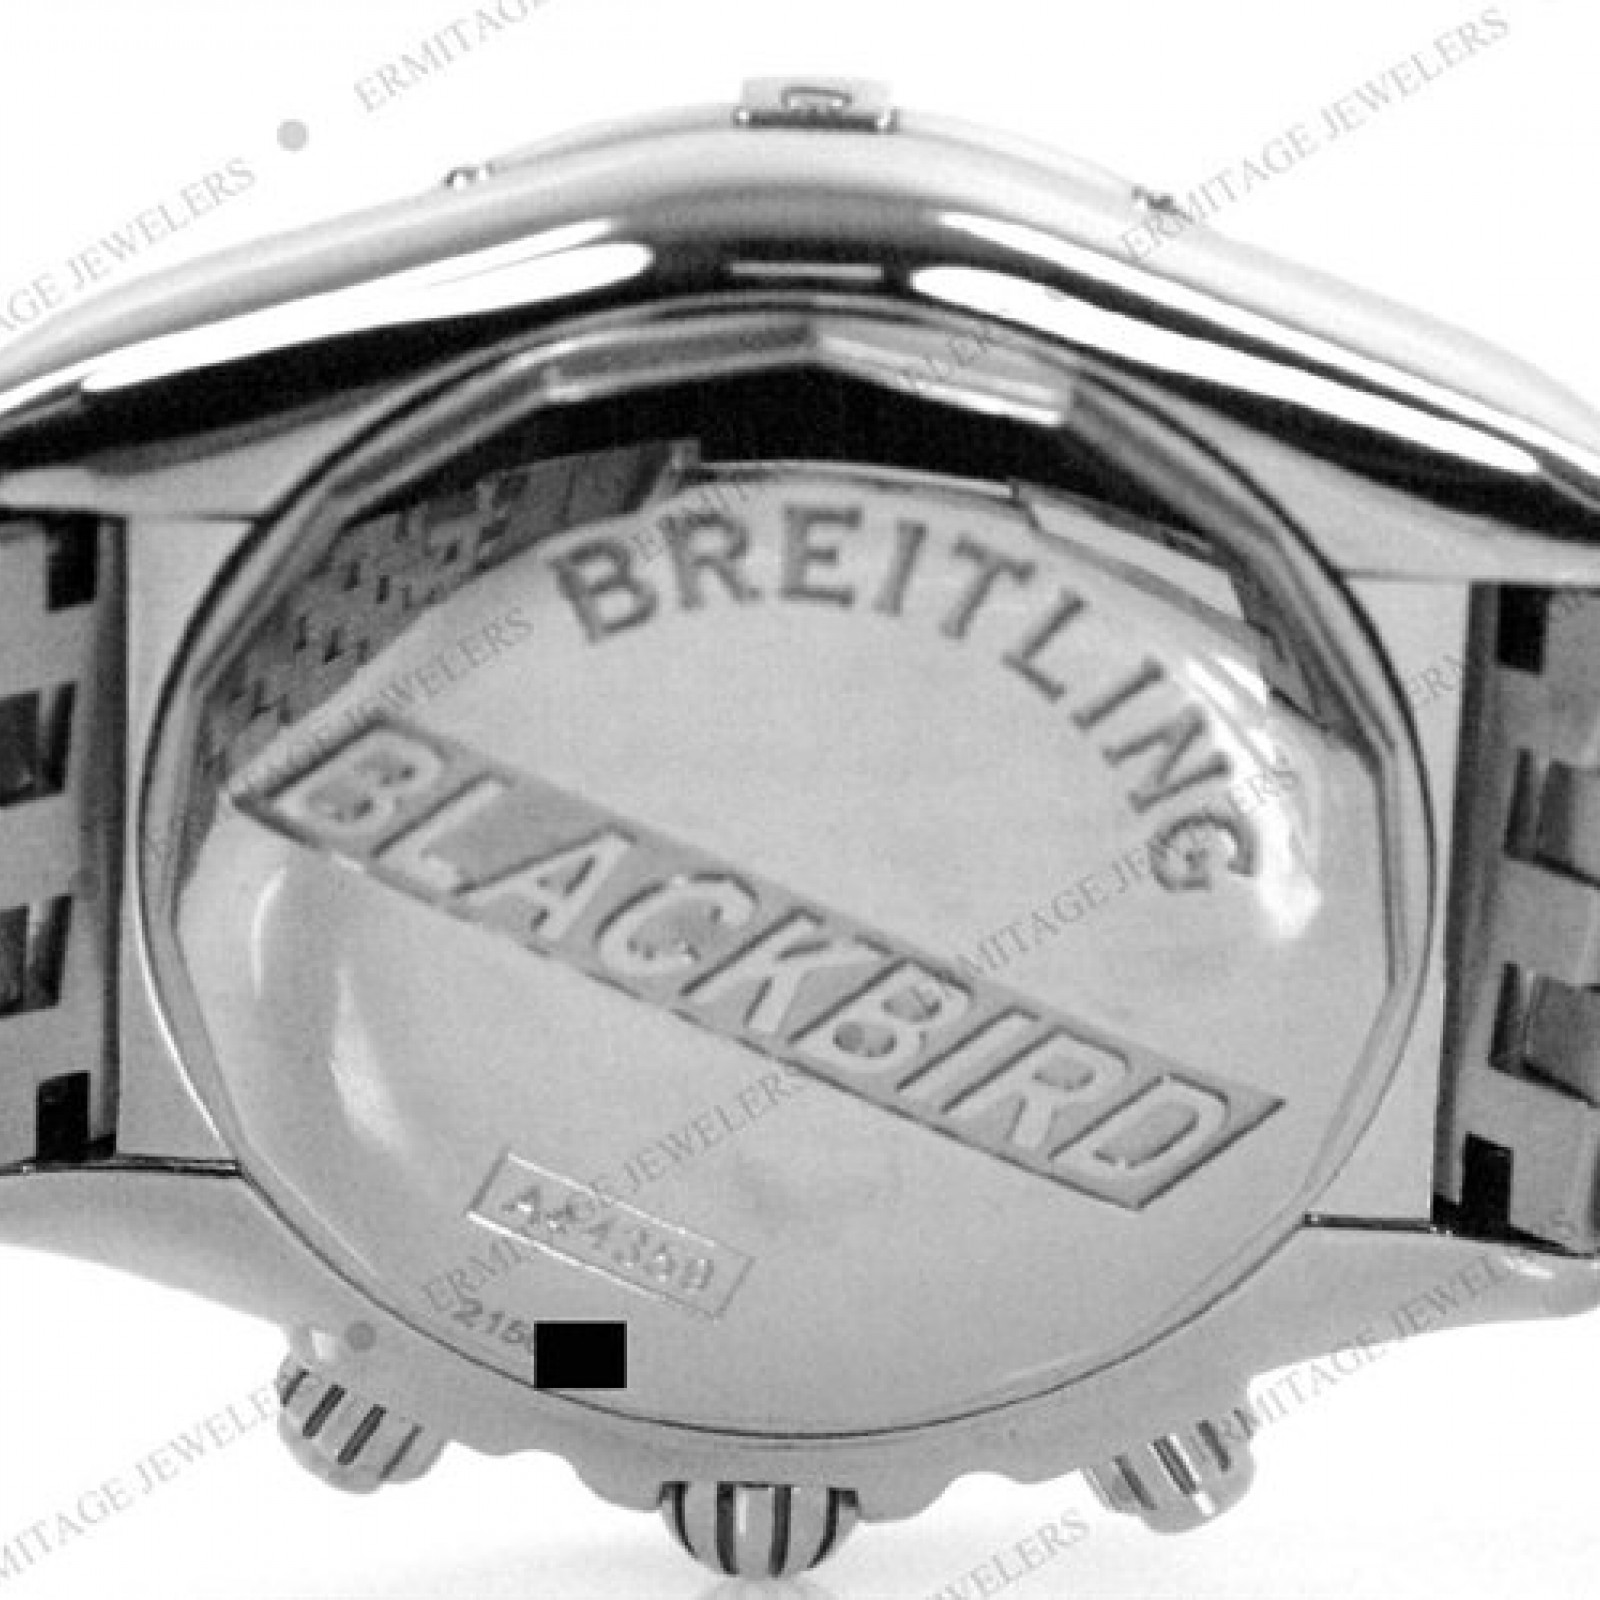 Pre-Owned Breitling Chronomat Blackbird A44359 Steel